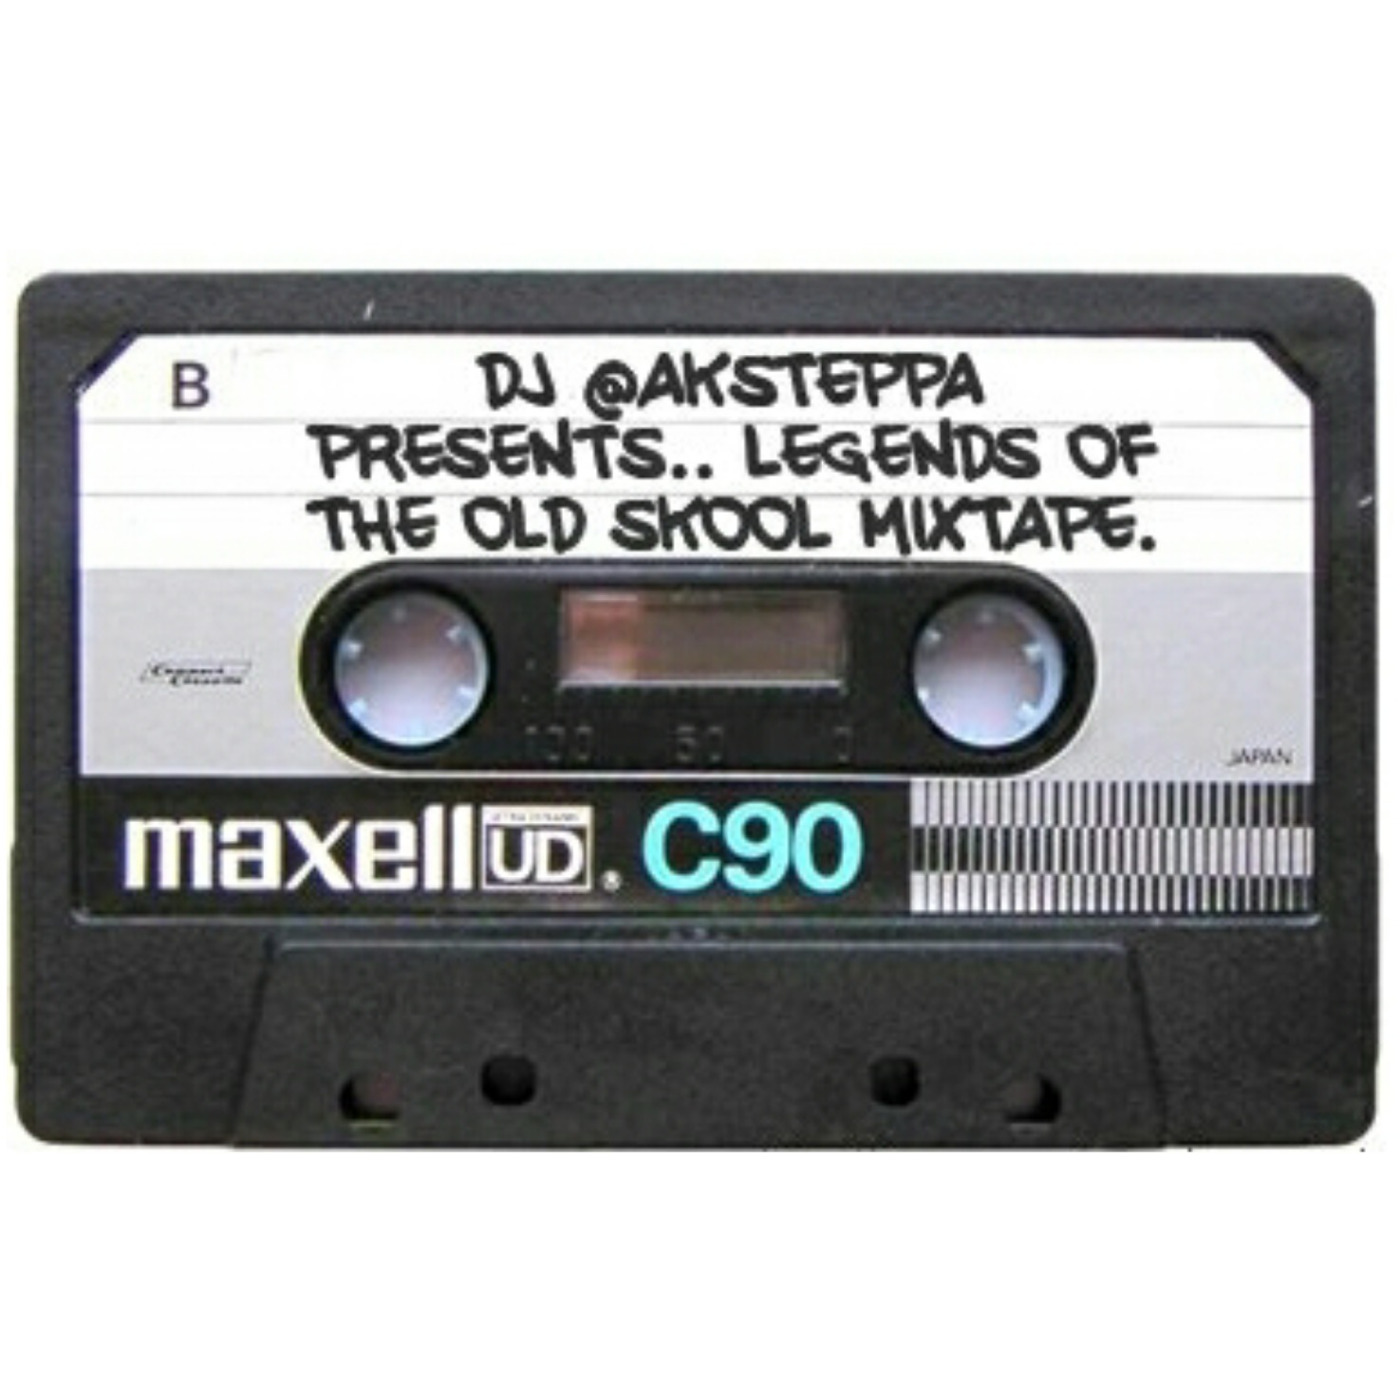 LEGENDS OF THE OLD SKOOL MIXTAPE :: DJ @AKSTEPPA